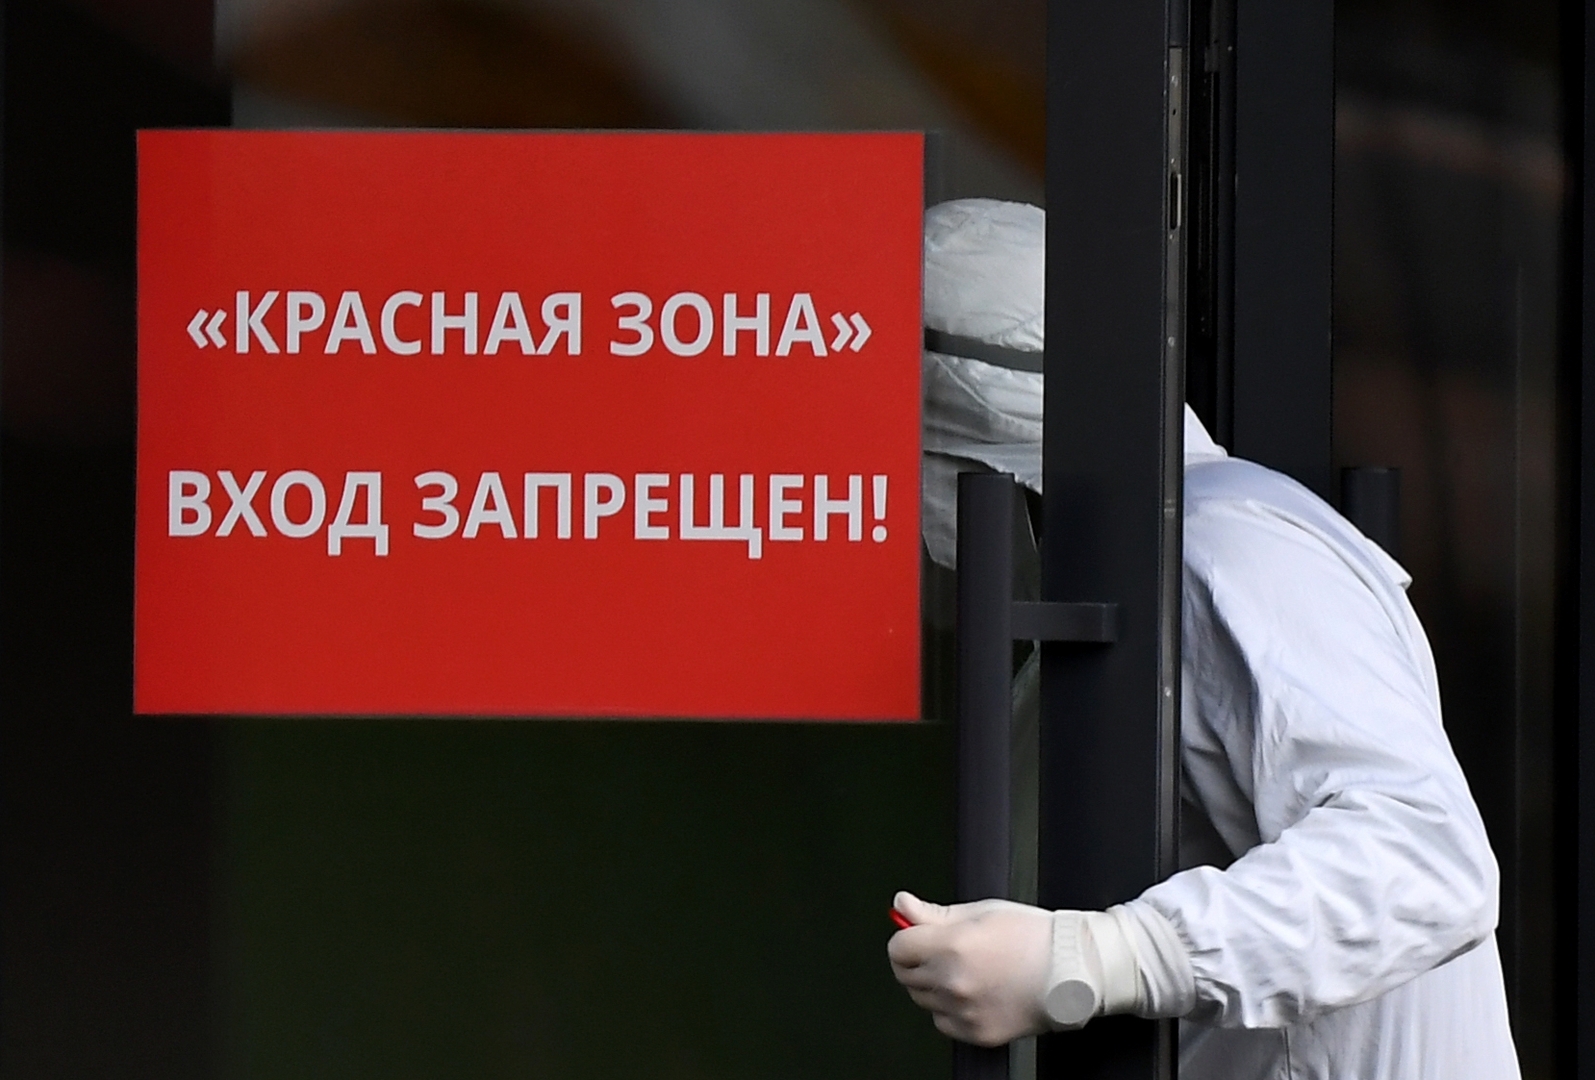 الإصابات اليومية بكورونا في روسيا تحت الـ17 ألفا لأول مرة منذ يناير